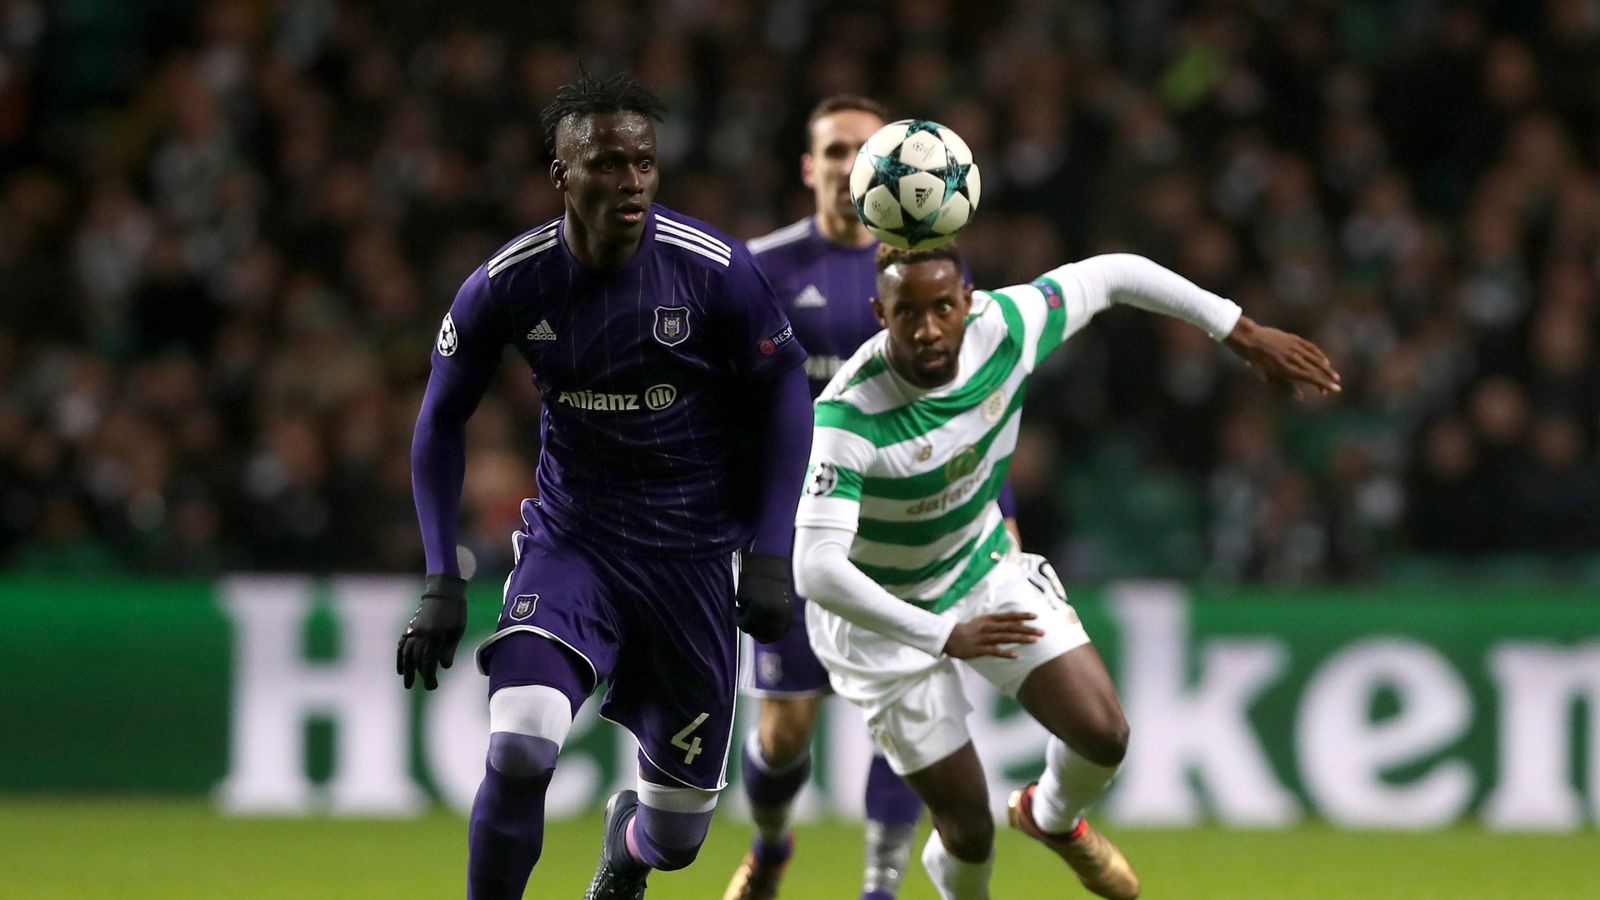 Celtic 0 - 1 Anderlecht - Match Report & Highlights